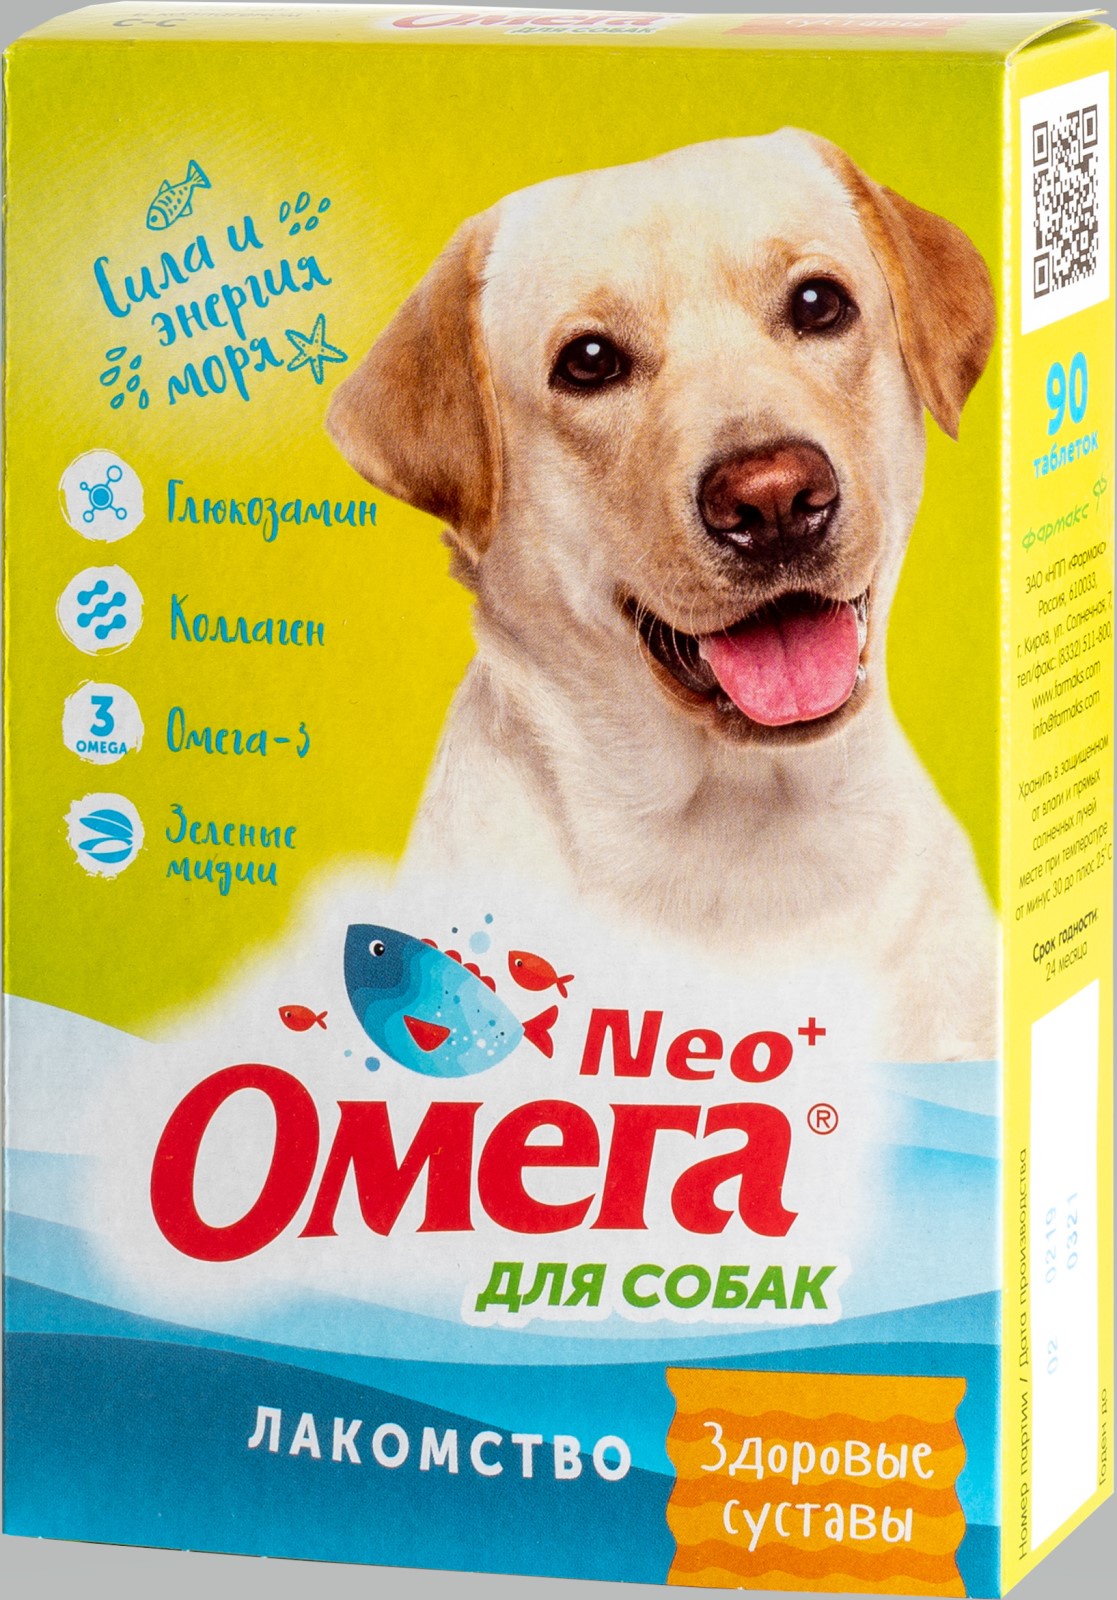 фото Лакомство "Омега Neo+" с глюкозамином и коллагеном "Здоровые суставы" для собак 90 таблеток, 45 г.